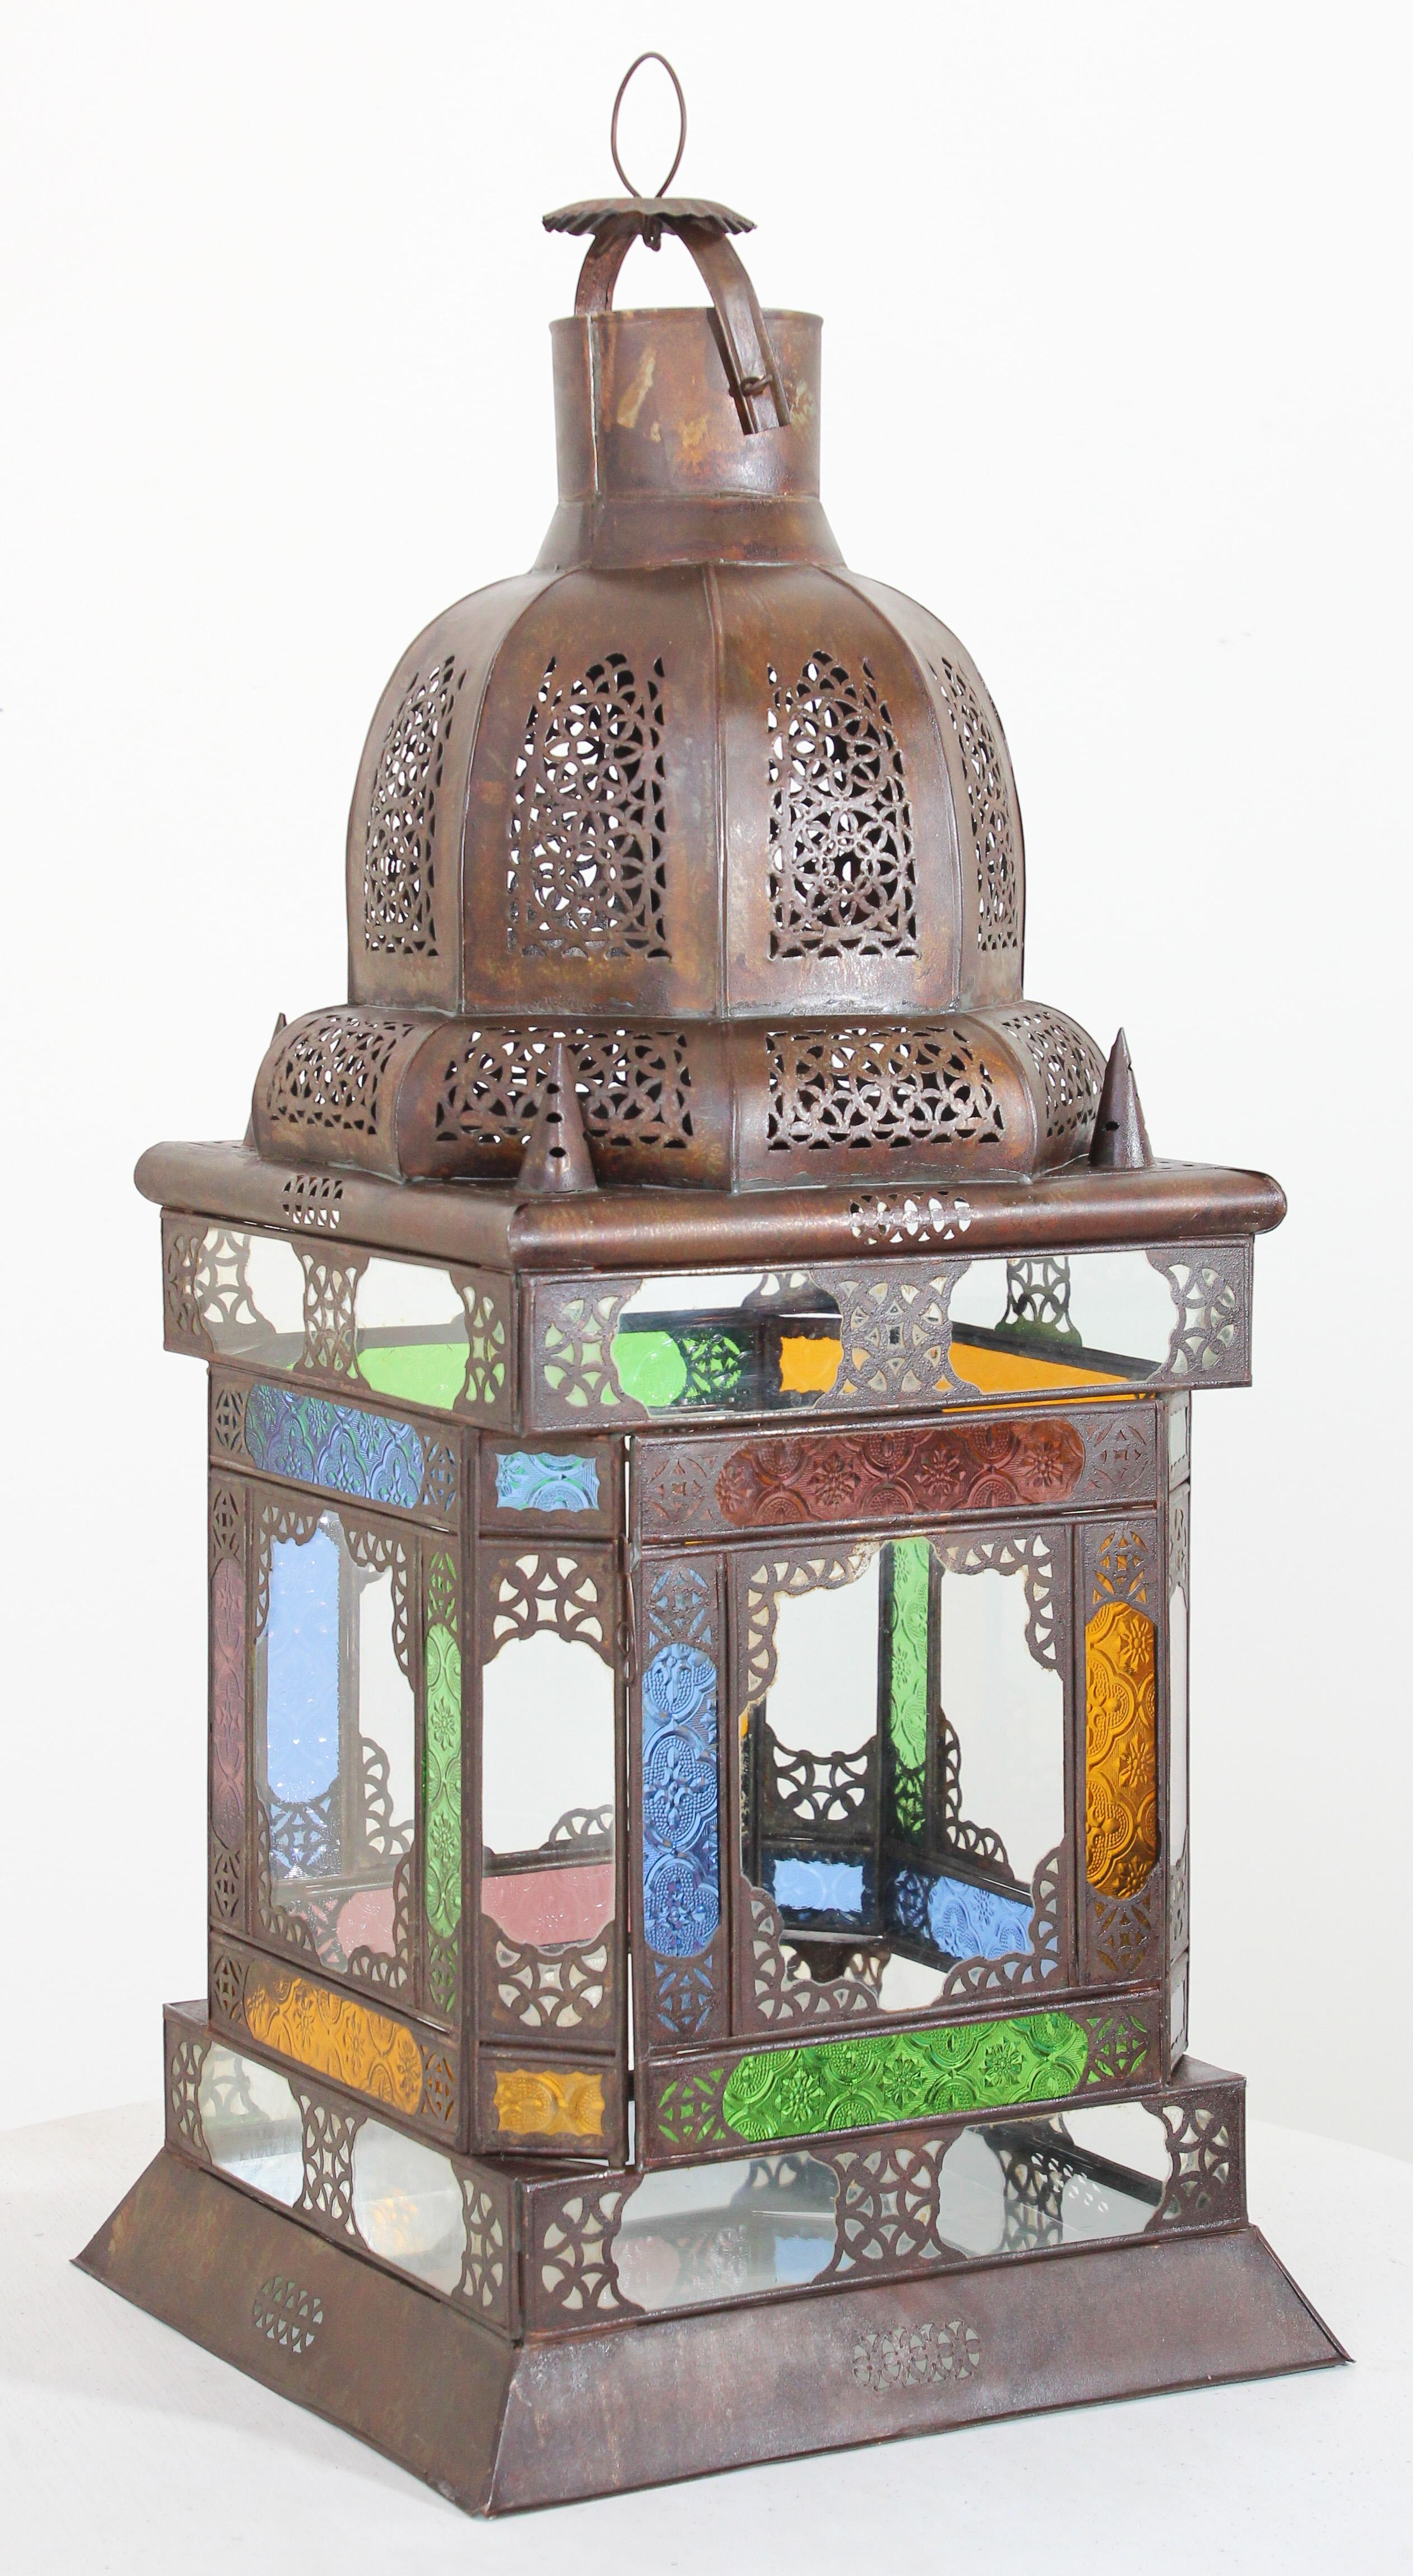 Lanterne marocaine vintage en métal avec verre multicolore.
Grande lanterne marocaine en verre au design mauresque.
Lanterne marocaine de forme carrée, élégante et impressionnante, en métal et verre percé,
29 pouces de haut avec du verre soufflé